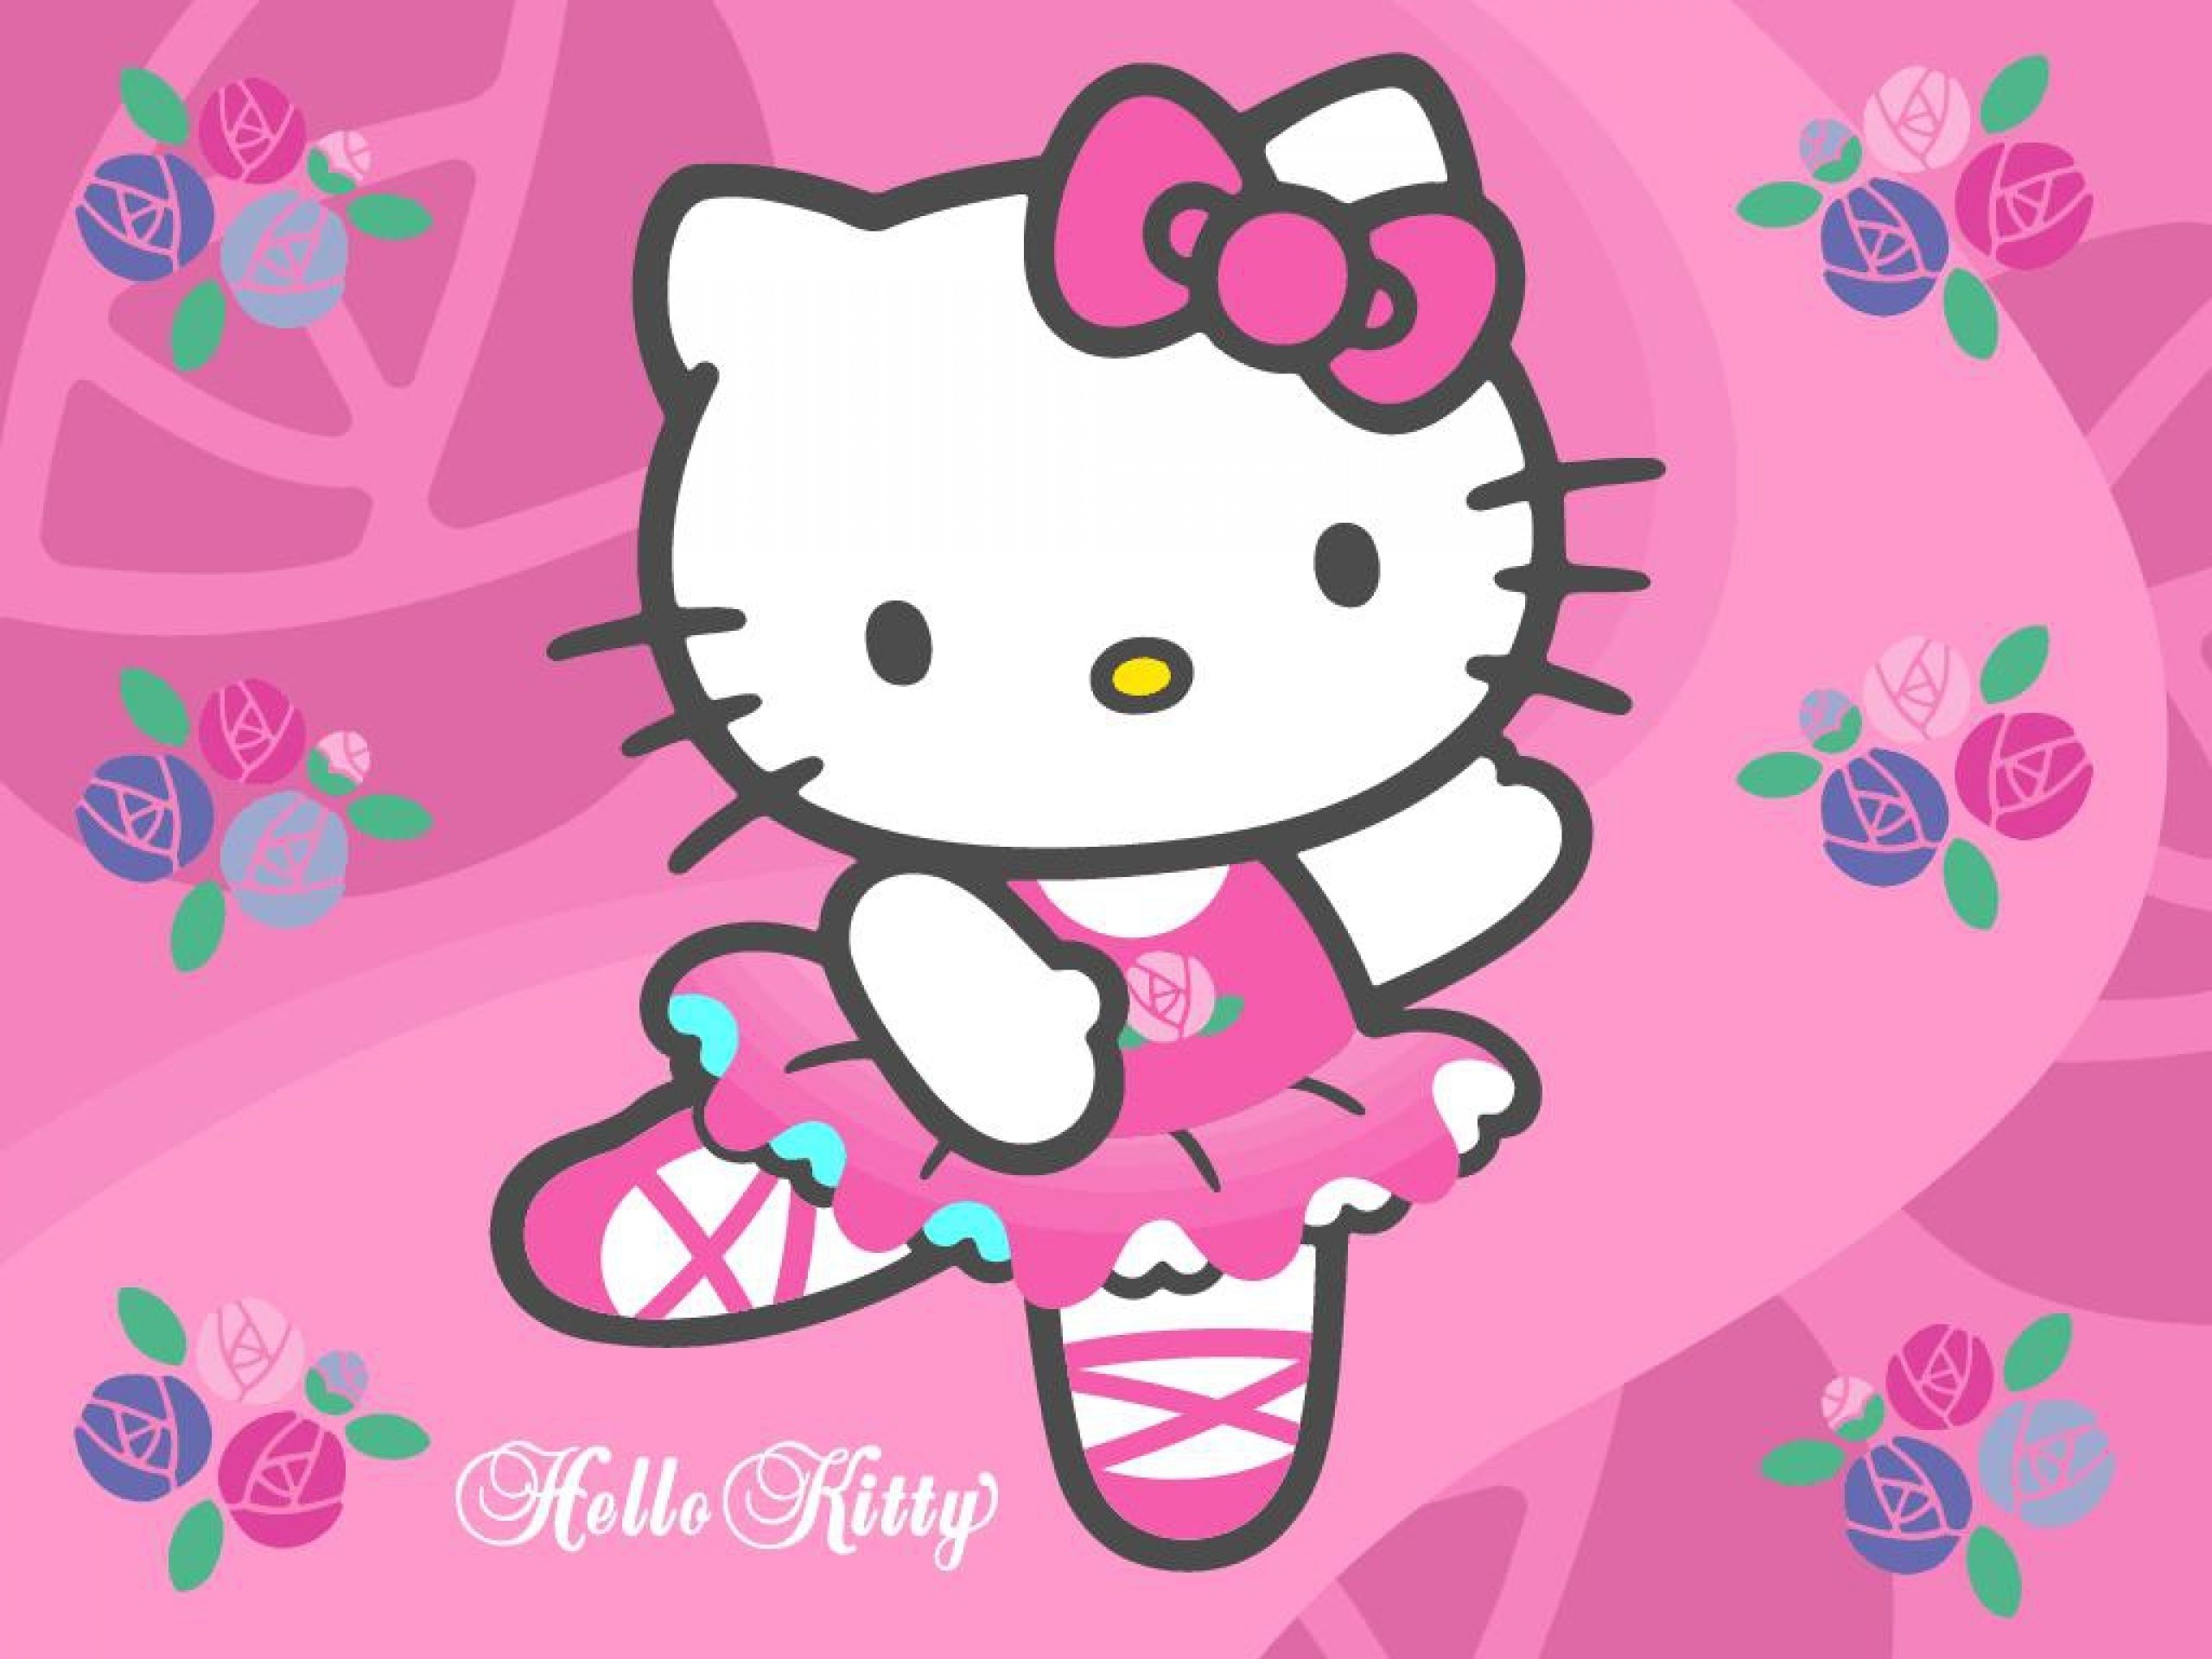 Màu hồng và Hello Kitty đã trở thành biểu tượng của sự đáng yêu và dễ thương. Hãy thêm một chút niềm vui cho cuộc sống của bạn với bộ sưu tập hình nền Hello Kitty màu hồng này. Chắc chắn bạn sẽ yêu thích bức tranh mới của mình trên chiếc điện thoại hoặc máy tính bảng của mình.